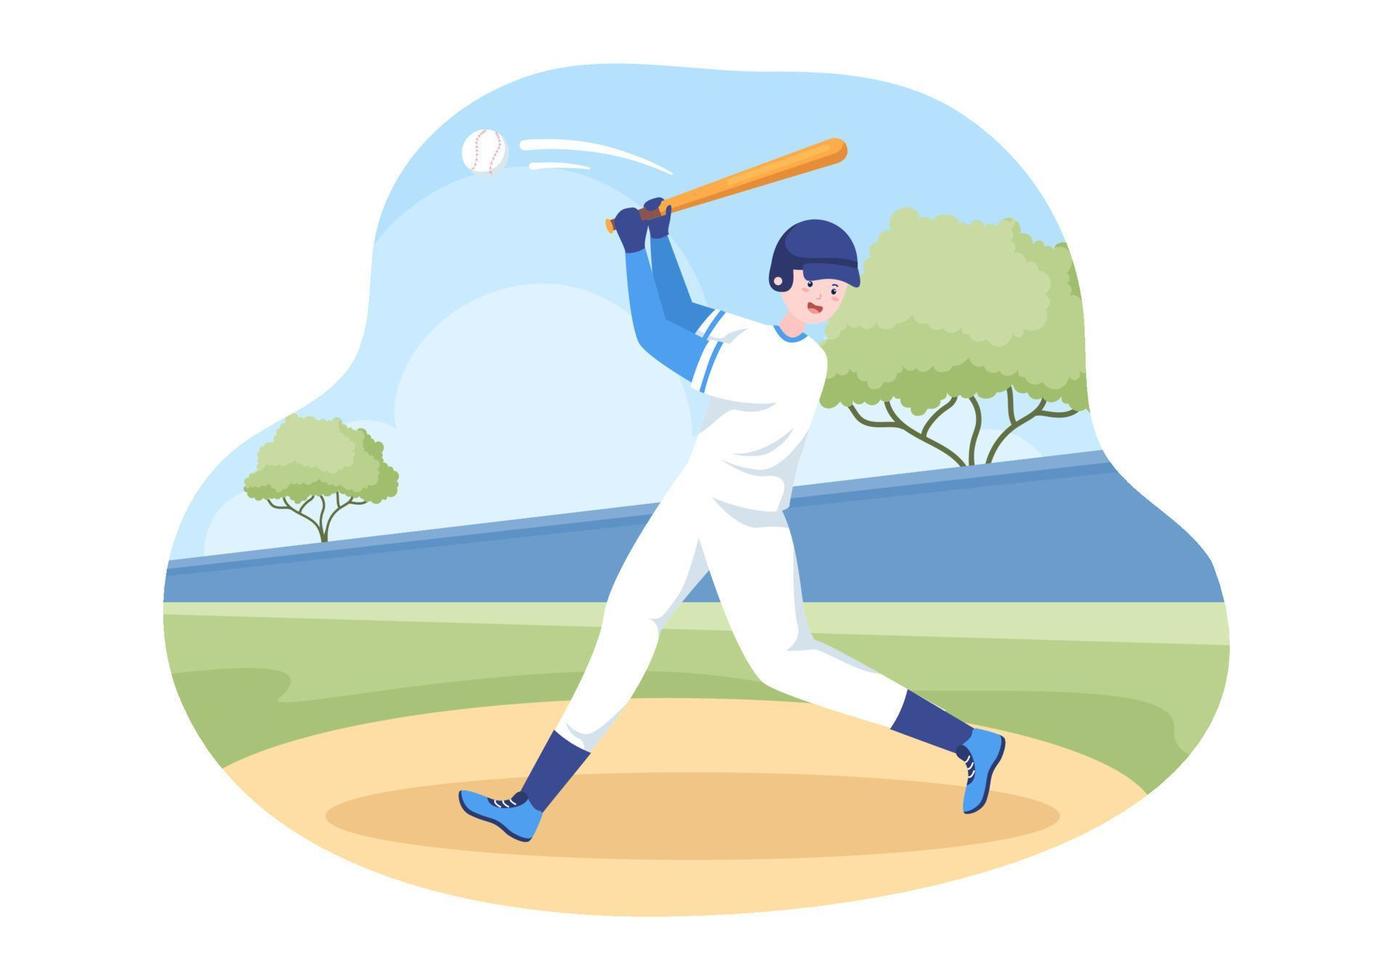 il giocatore di baseball fa sport lanciando, catturando o colpendo una palla con mazze e guanti che indossano l'uniforme sullo stadio del campo in un'illustrazione piatta del fumetto vettore